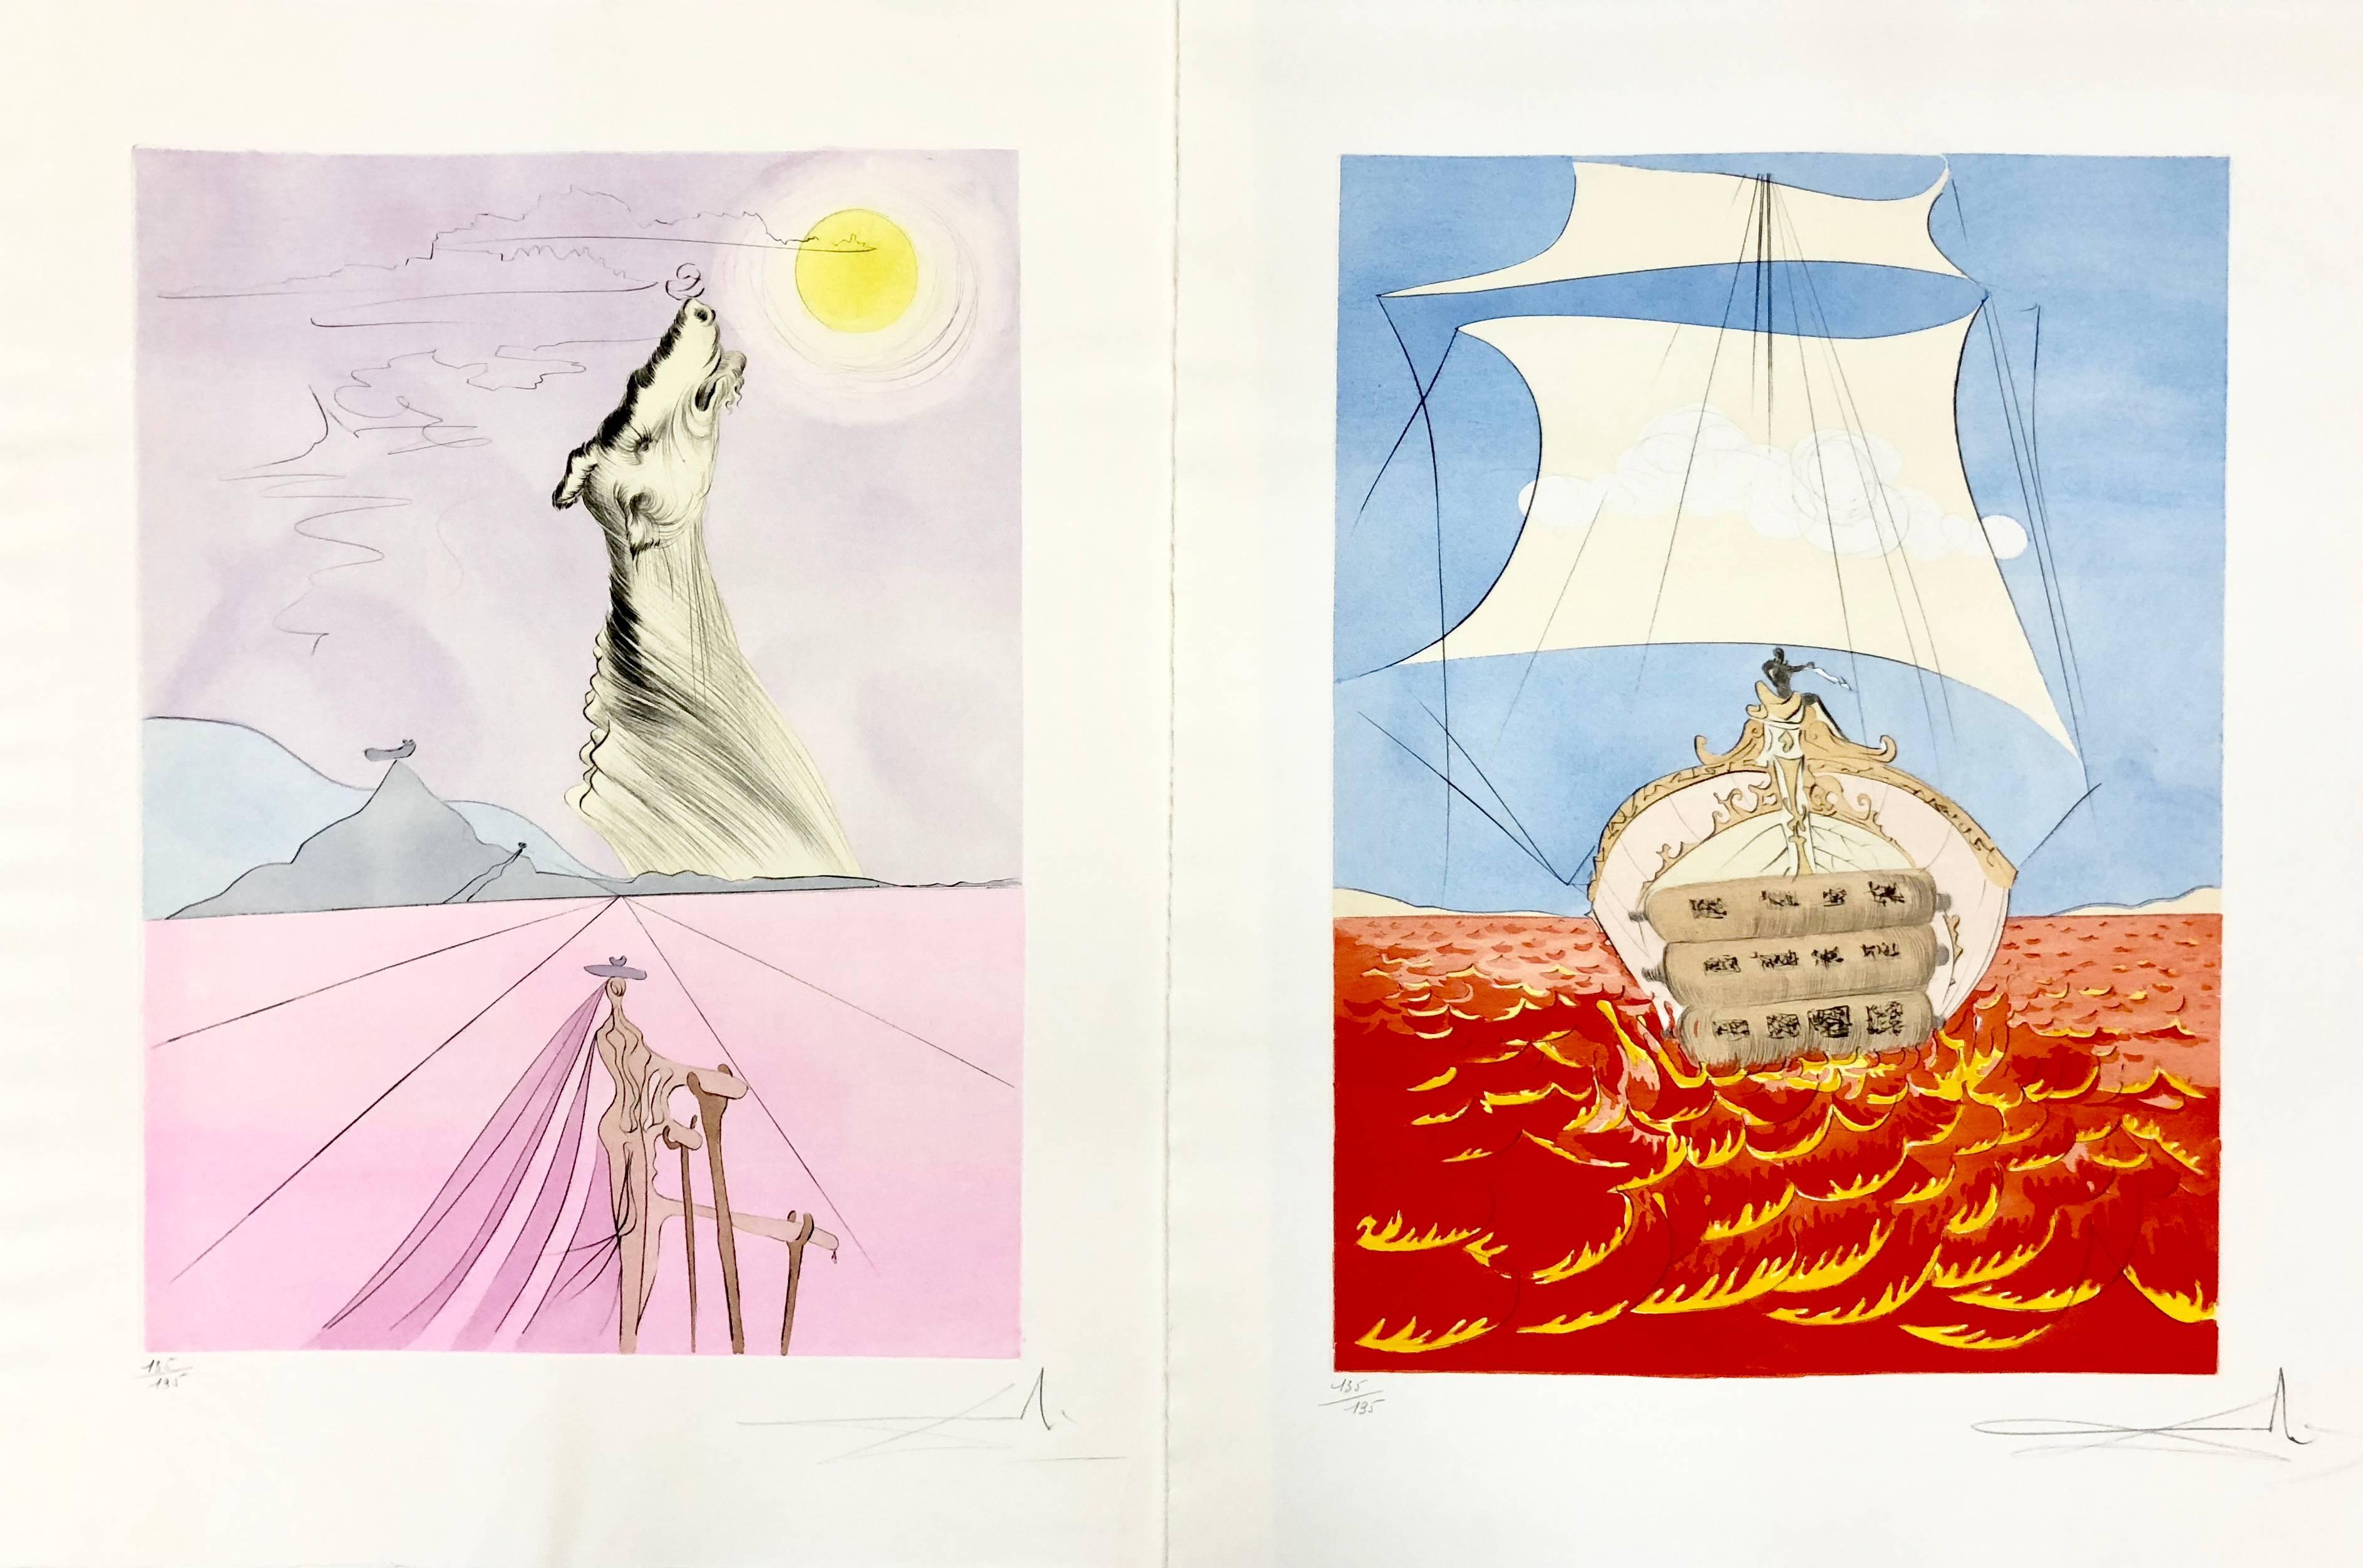 The Twelve Tribes of Israel Portfolio - Gray Landscape Print by Salvador Dalí